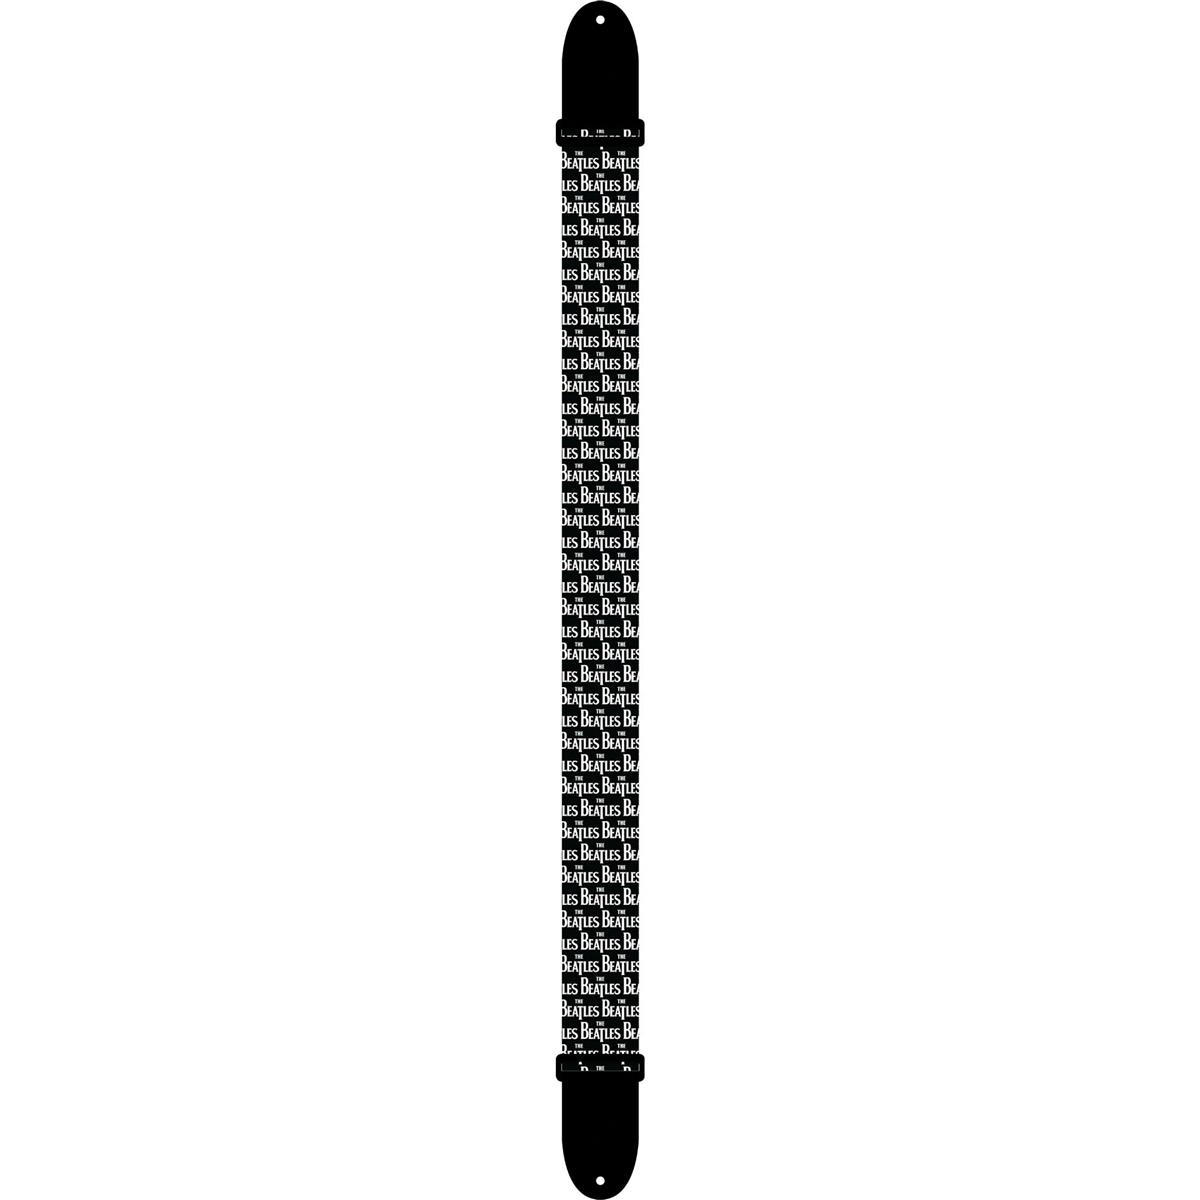 Ремень для гитары Perris Leathers LPCP 2 из полиэстера, белый логотип Beatles на черном